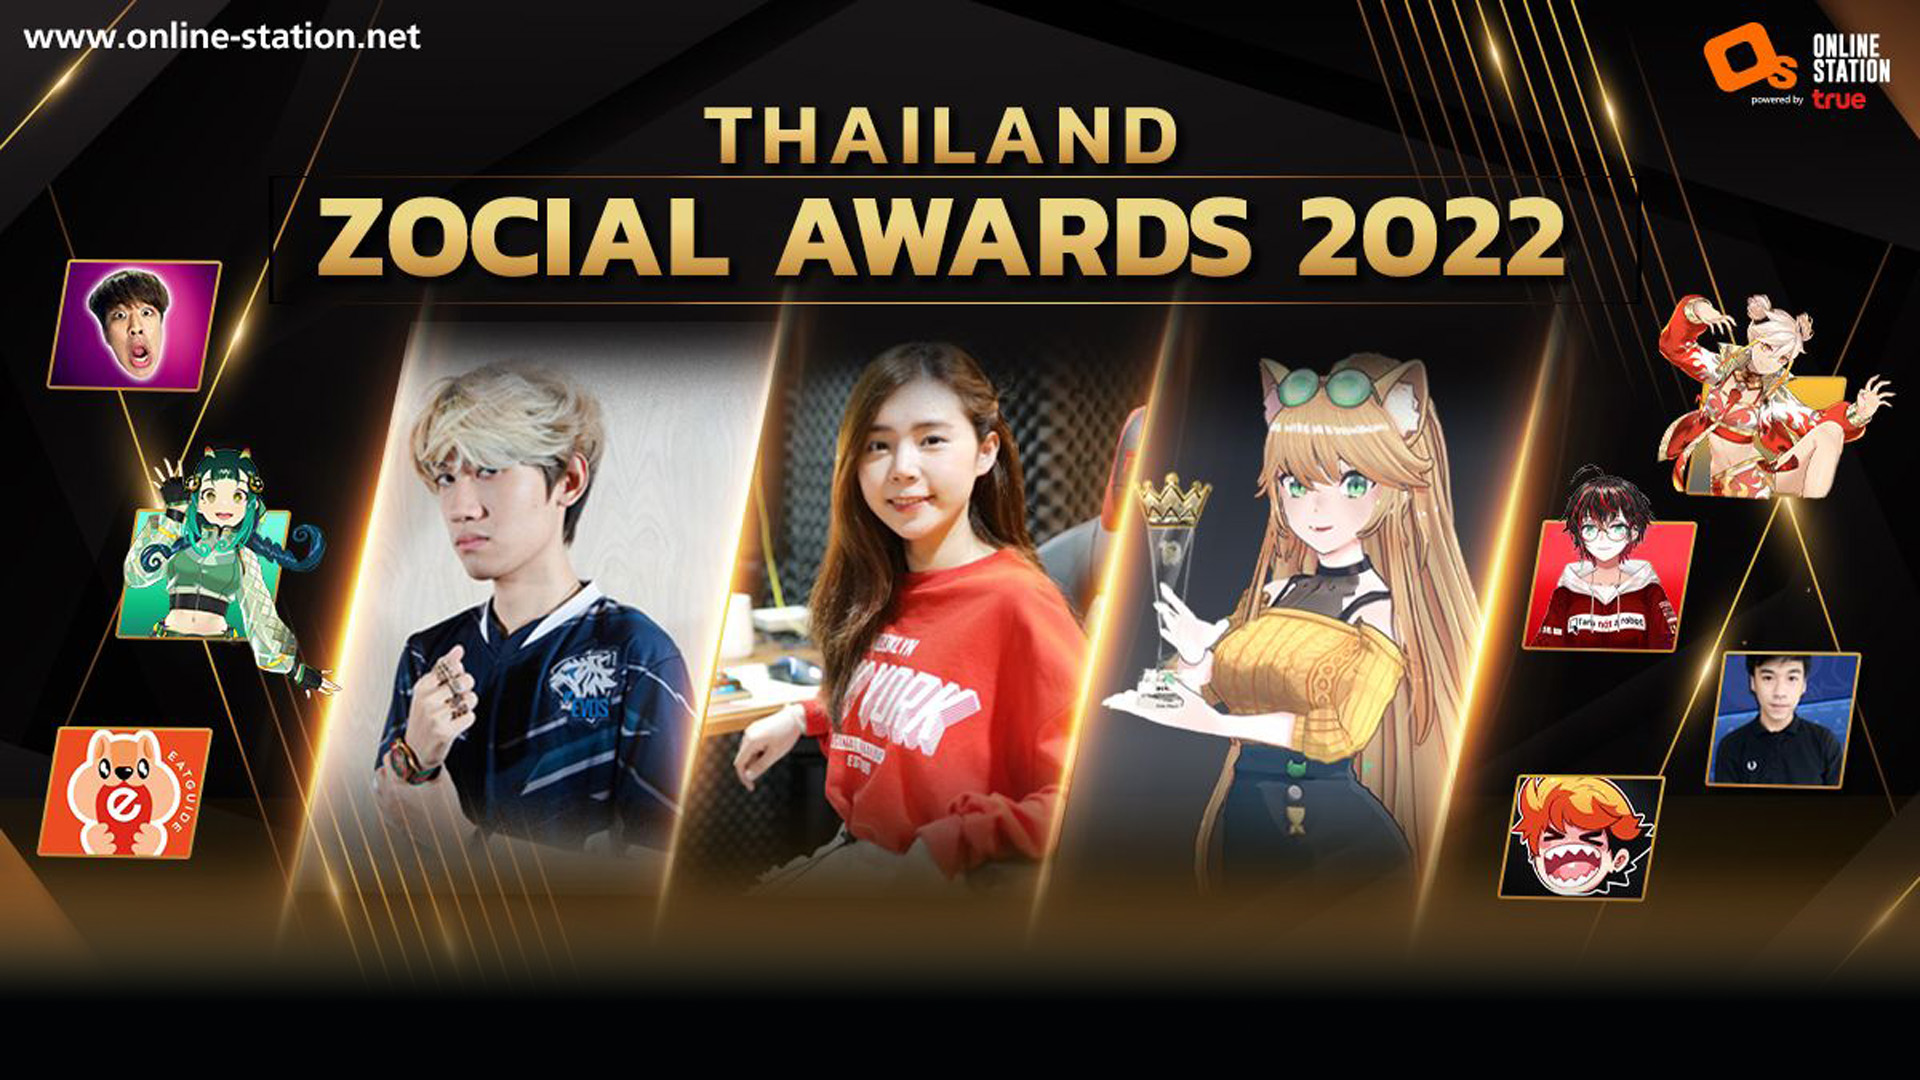 เหล่าครีเอเตอร์ – อินฟลูเอนเซอร์ ออนไลน์ สเตชั่น ในกลุ่มทรู คว้า 3 รางวัลใหญ่ “Thailand Zocial Awards 2022”